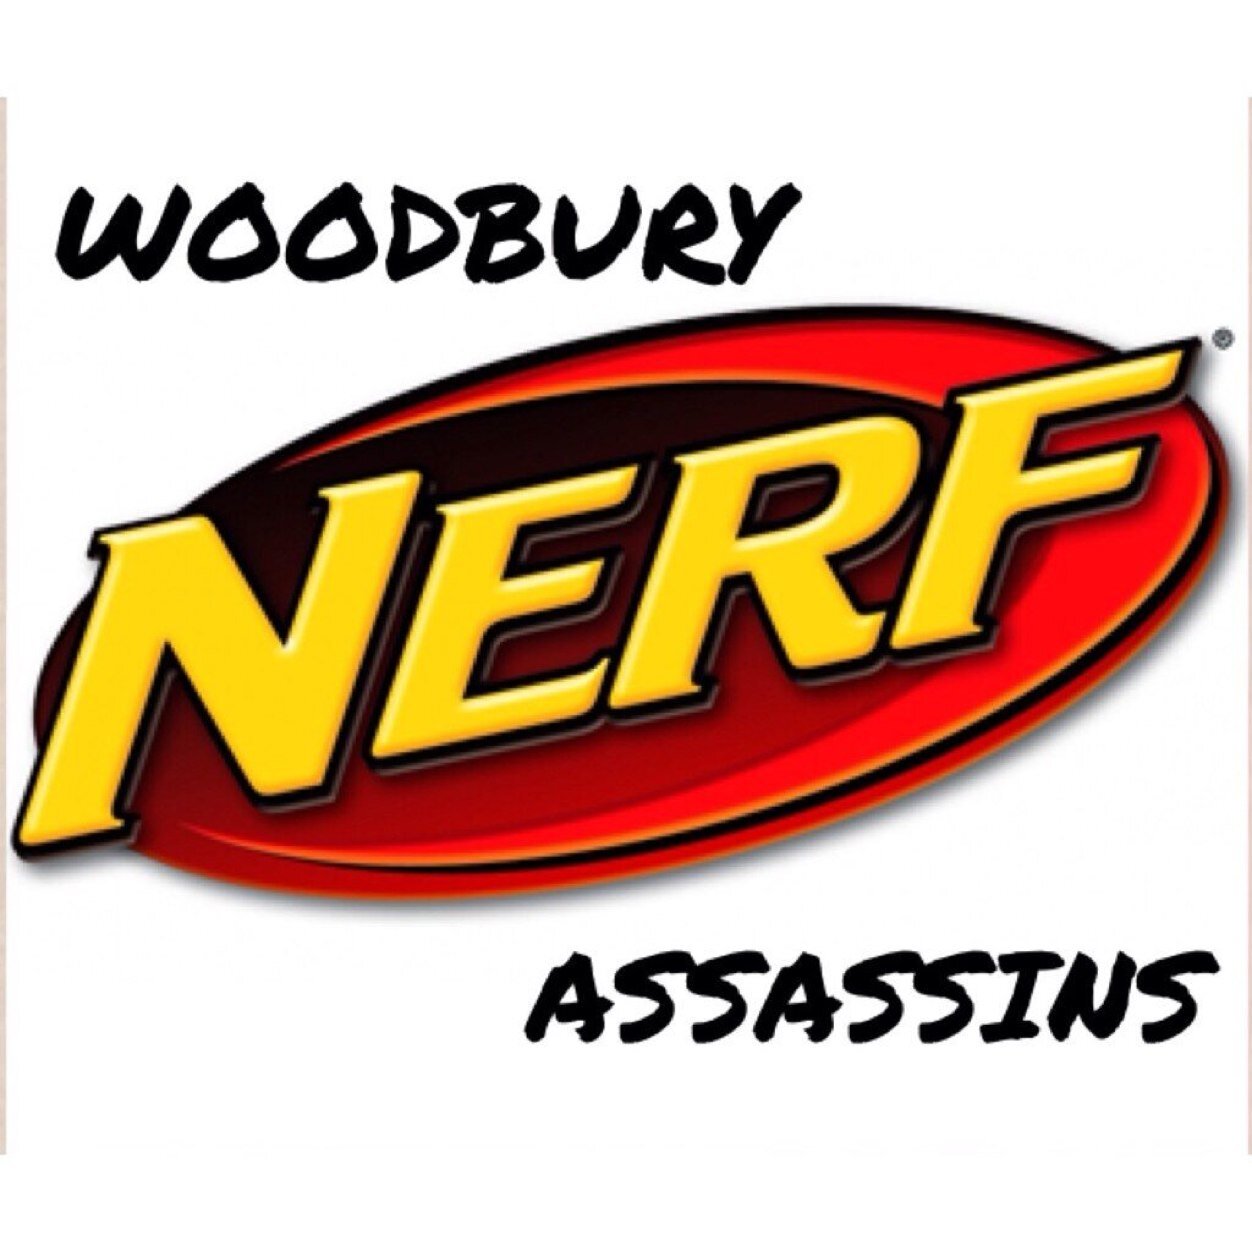 Woodbury Nerf Profile